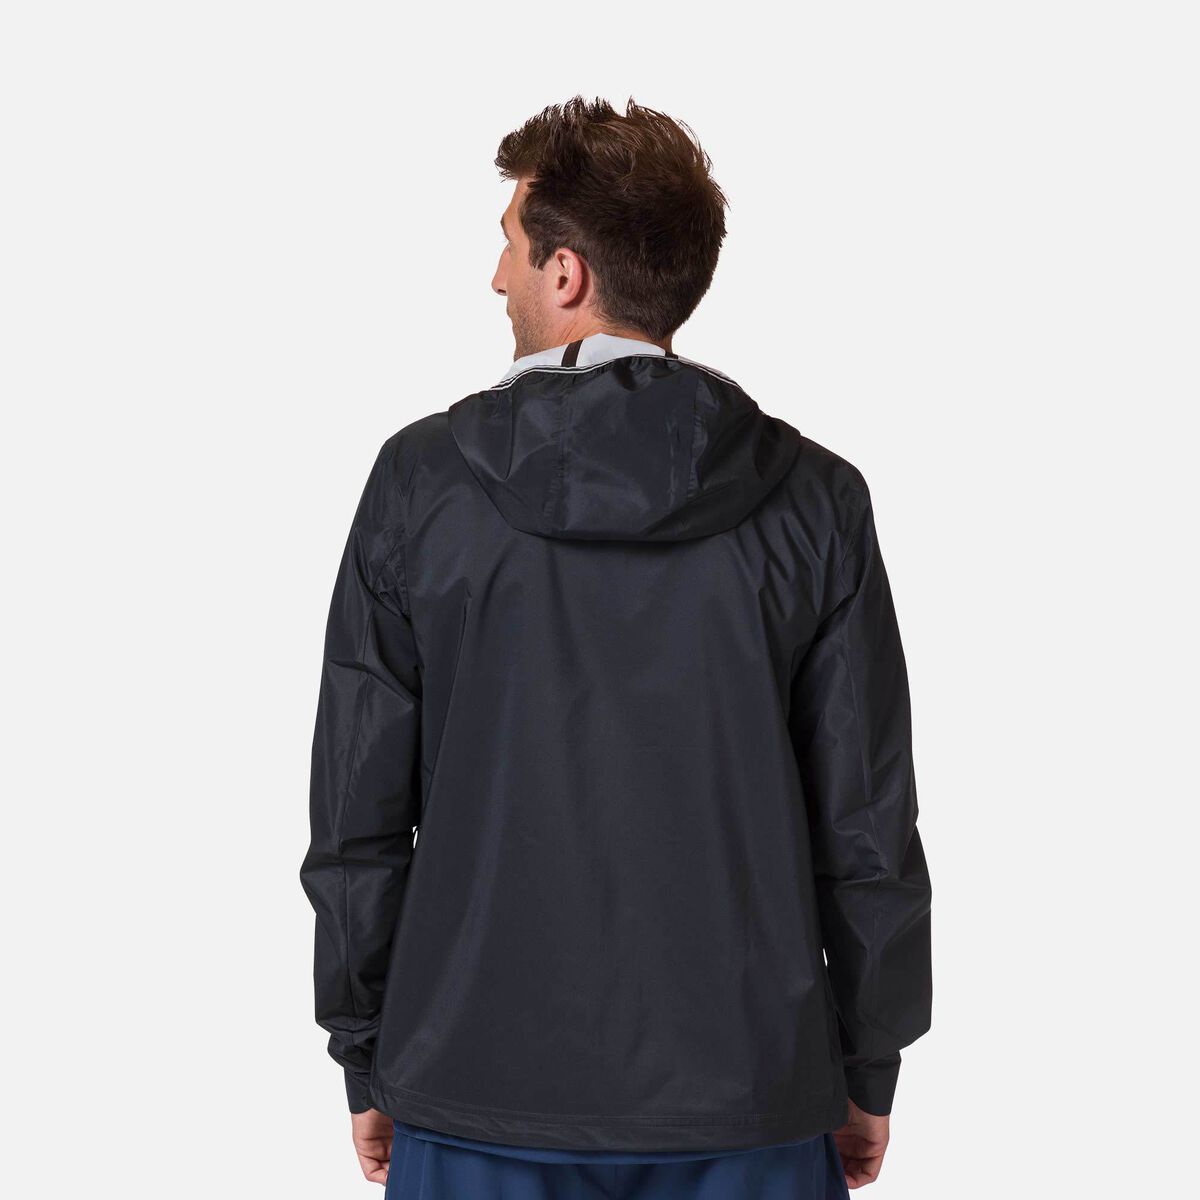 Rossignol Men's Active Rain Jacket Black